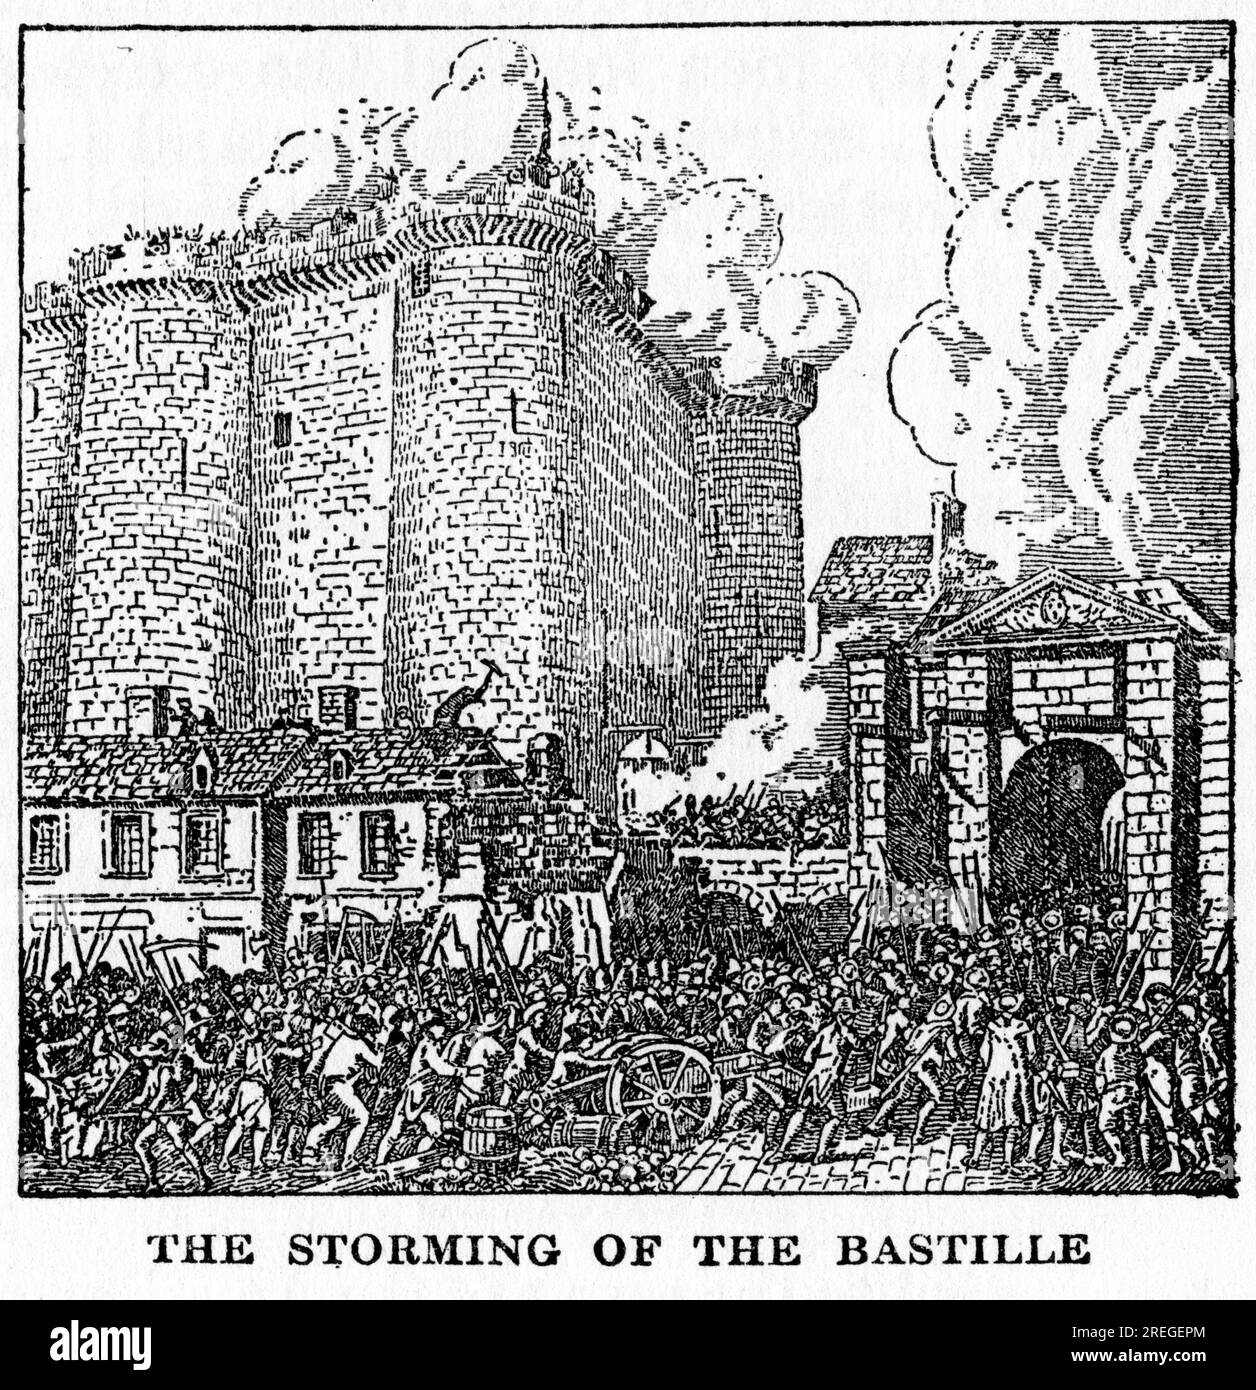 Gravur des Sturms der bastille, des ersten großen Ereignisses der Französischen Revolution Stockfoto